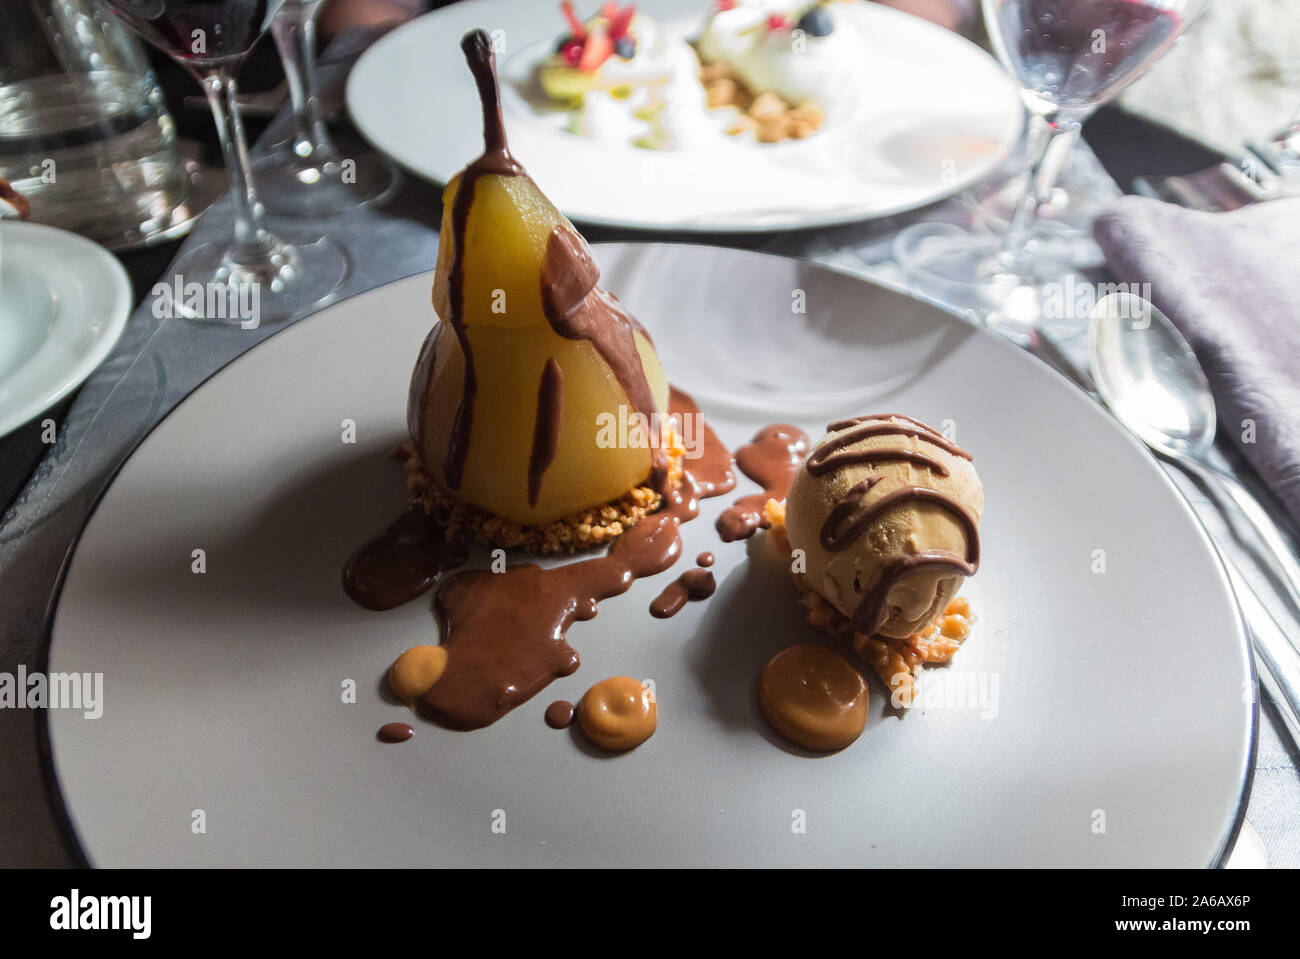 Délicieux dessert à partir d'un restaurant gastronomique à Paris (France). Poire, crème glacée au caramel avec un coulis de chocolat. French food Banque D'Images